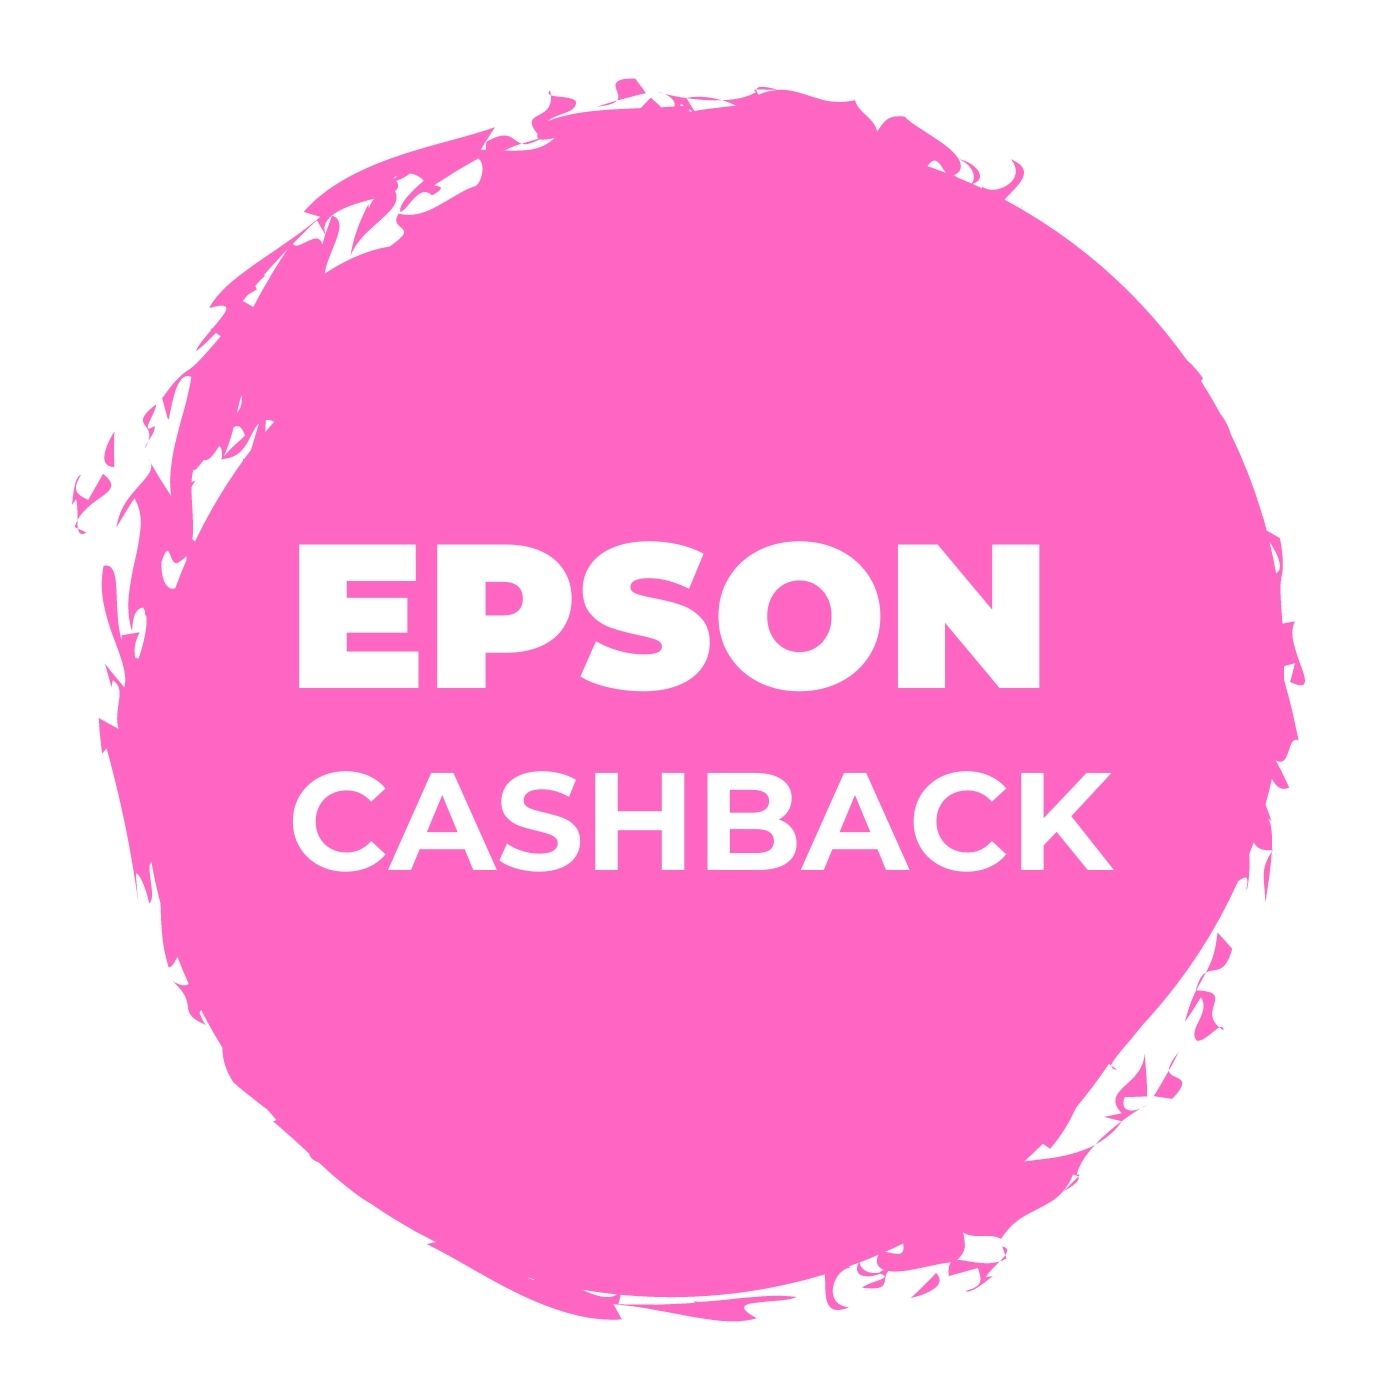 Epson Cashback! 0 